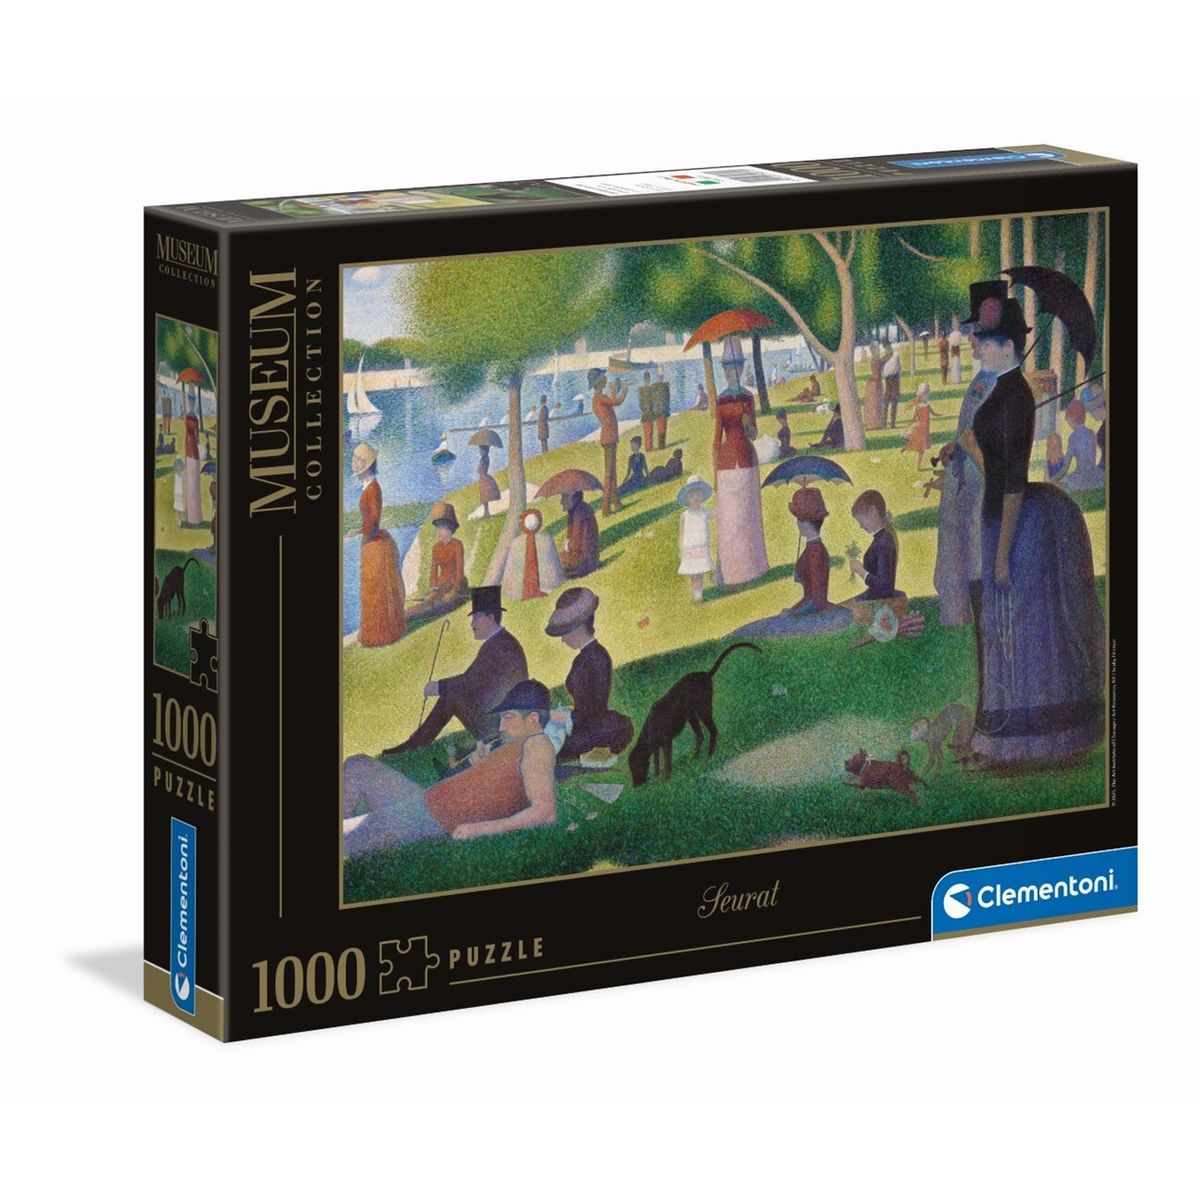 Tapis de Puzzles - 300 à 1000 pièces - pièces JIG & PUZ